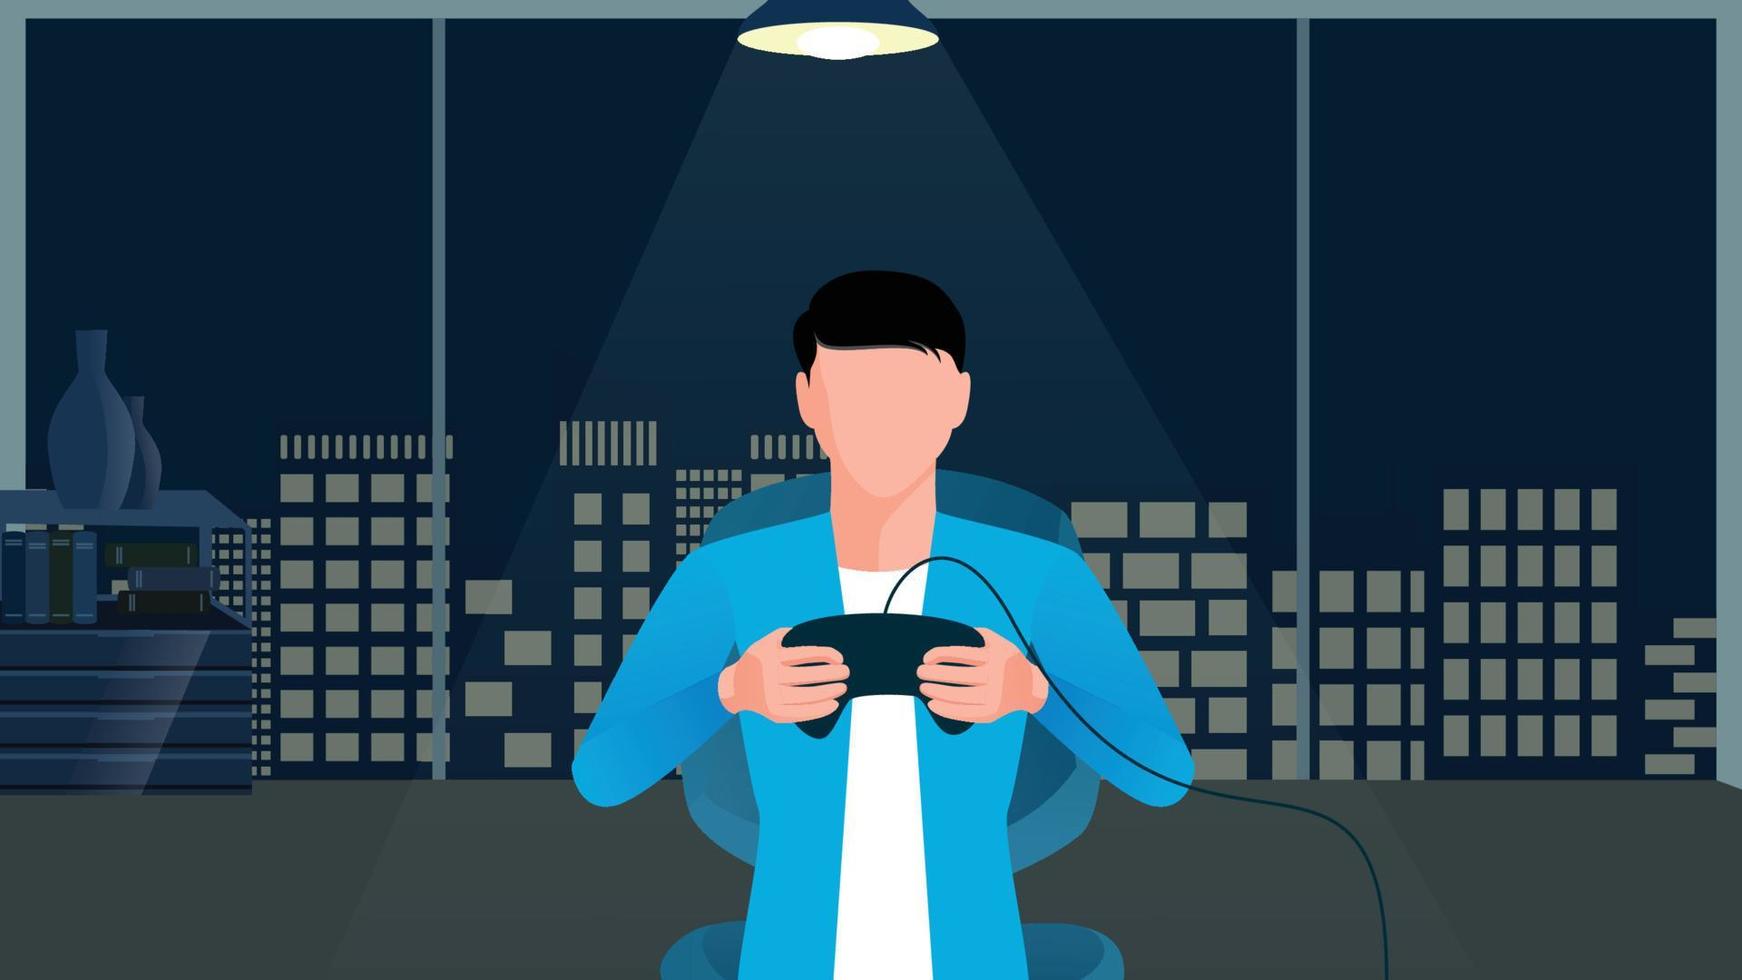 ilustración de personaje plano de gamer boy nocturno sobre fondo de paisaje urbano plano oscuro vector